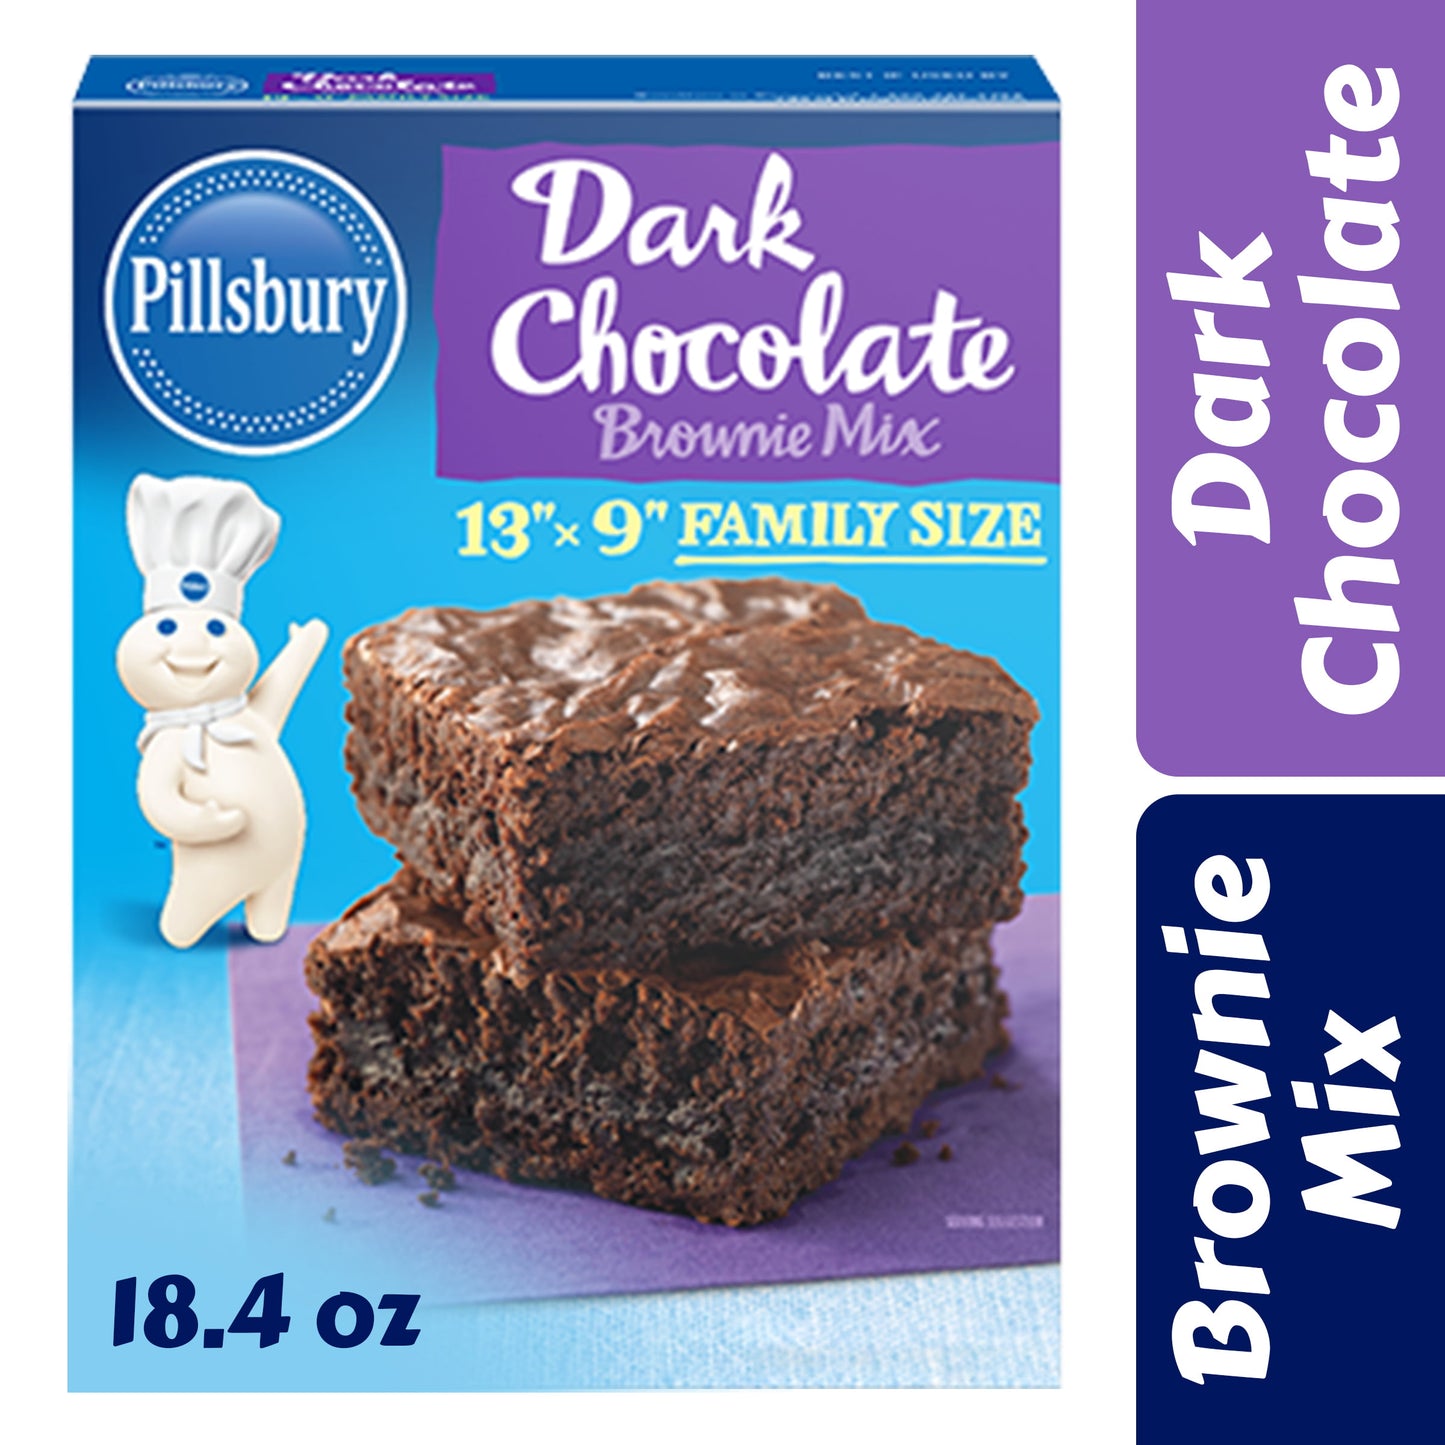 Pillsbury Family Size Dark Chocolate Brownie Mix, 18.4 oz Box